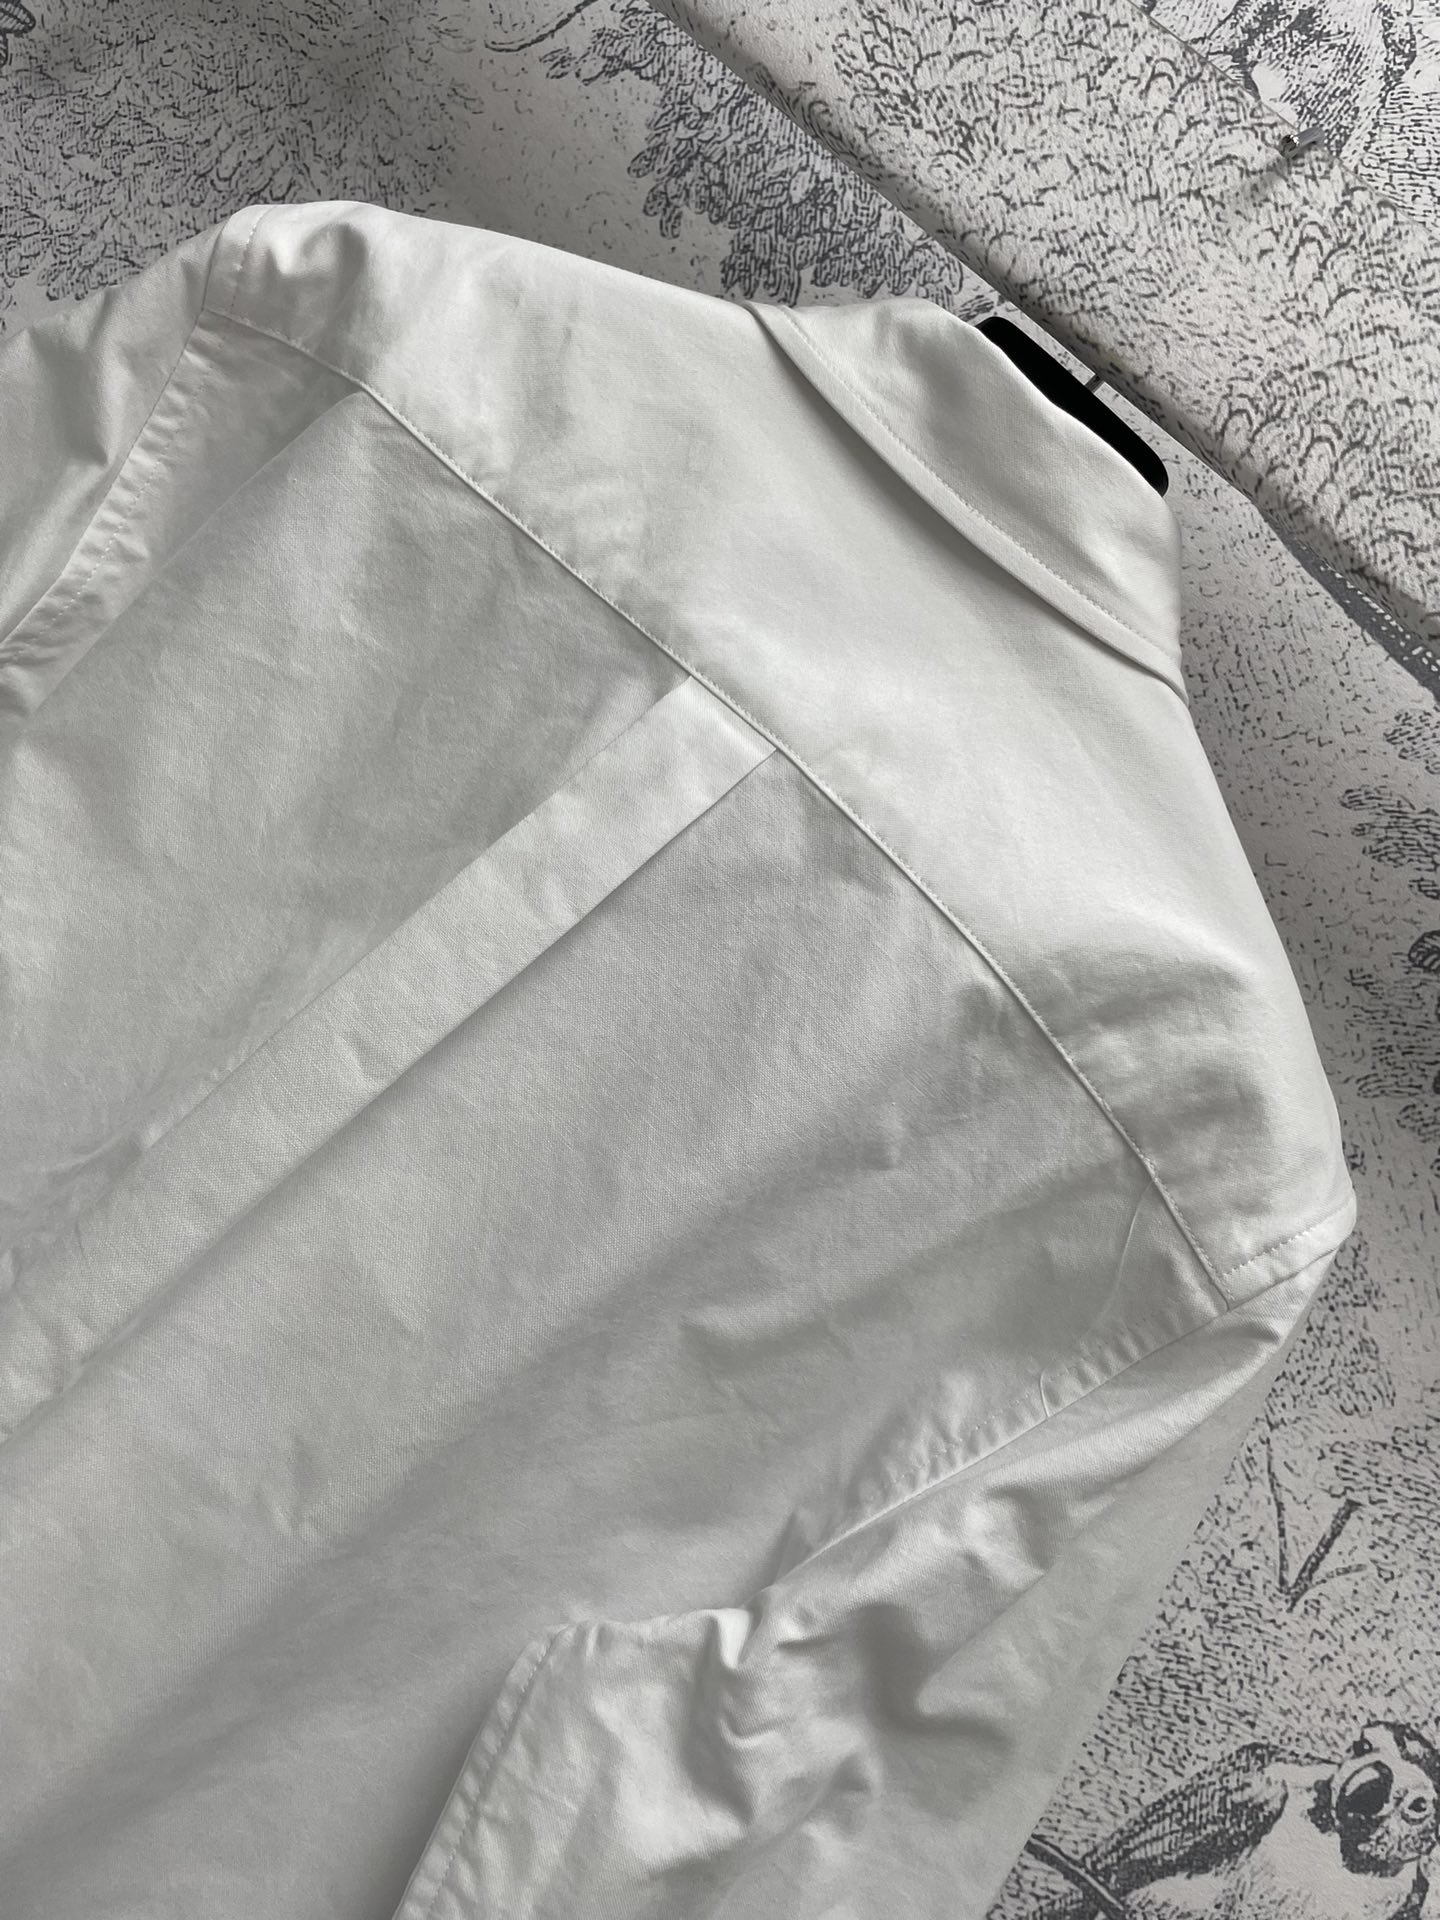 P家24春夏三角标翻领衬衫基础休闲的翻领平底衬衫版型剪裁设计搭配定染深海母贝扣细节质感可谓是达到了巅峰状